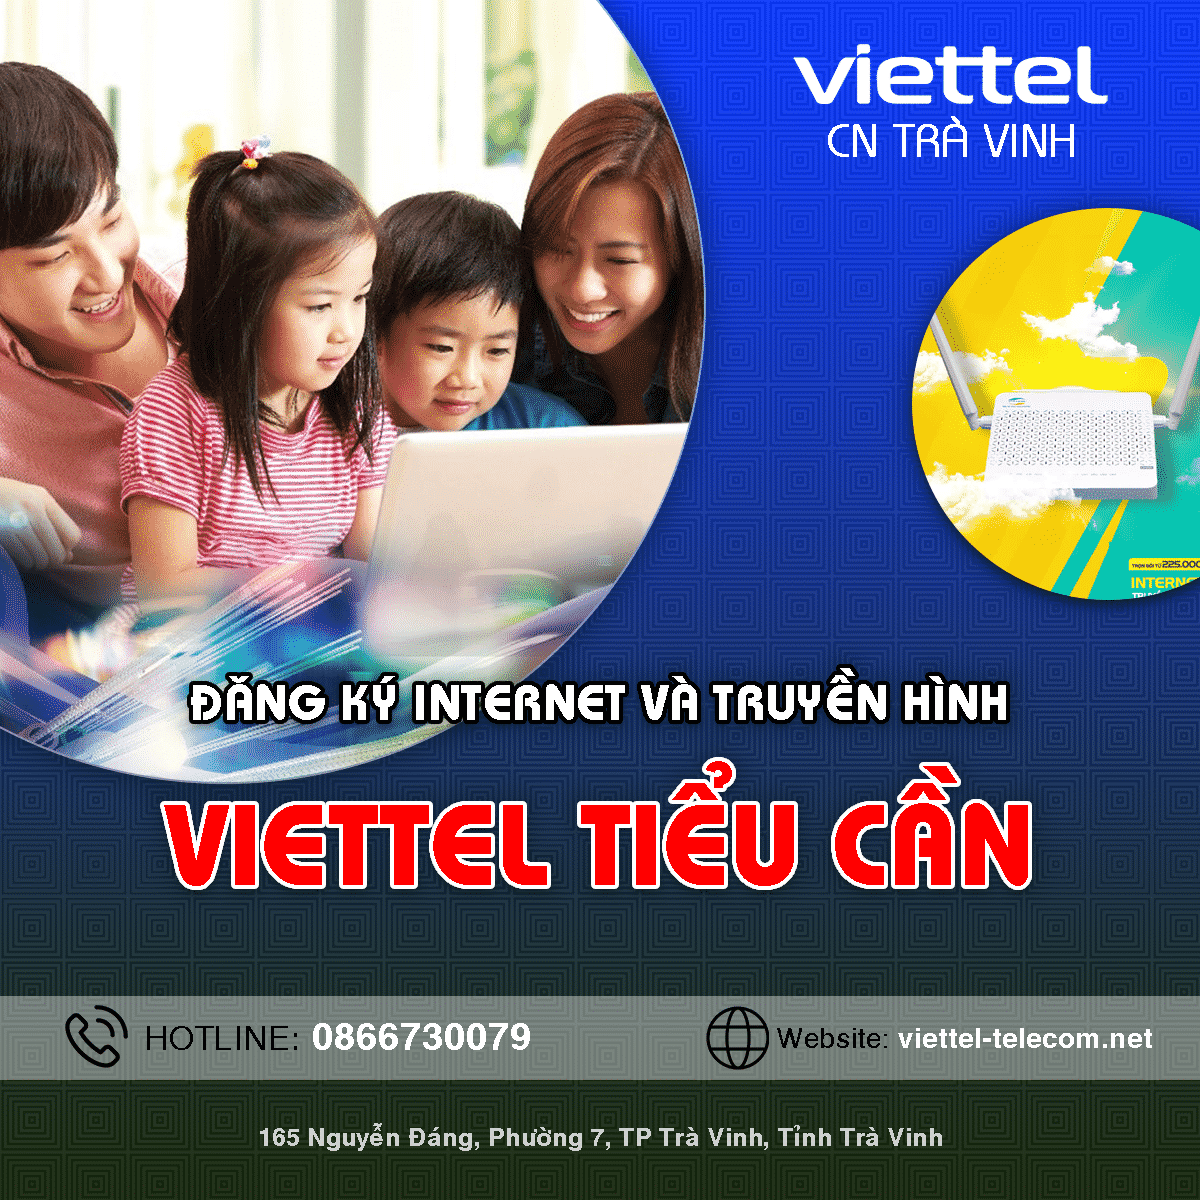 Khuyến mãi đăng ký lắp mạng Internet / Truyền hình Viettel Tiểu Cần